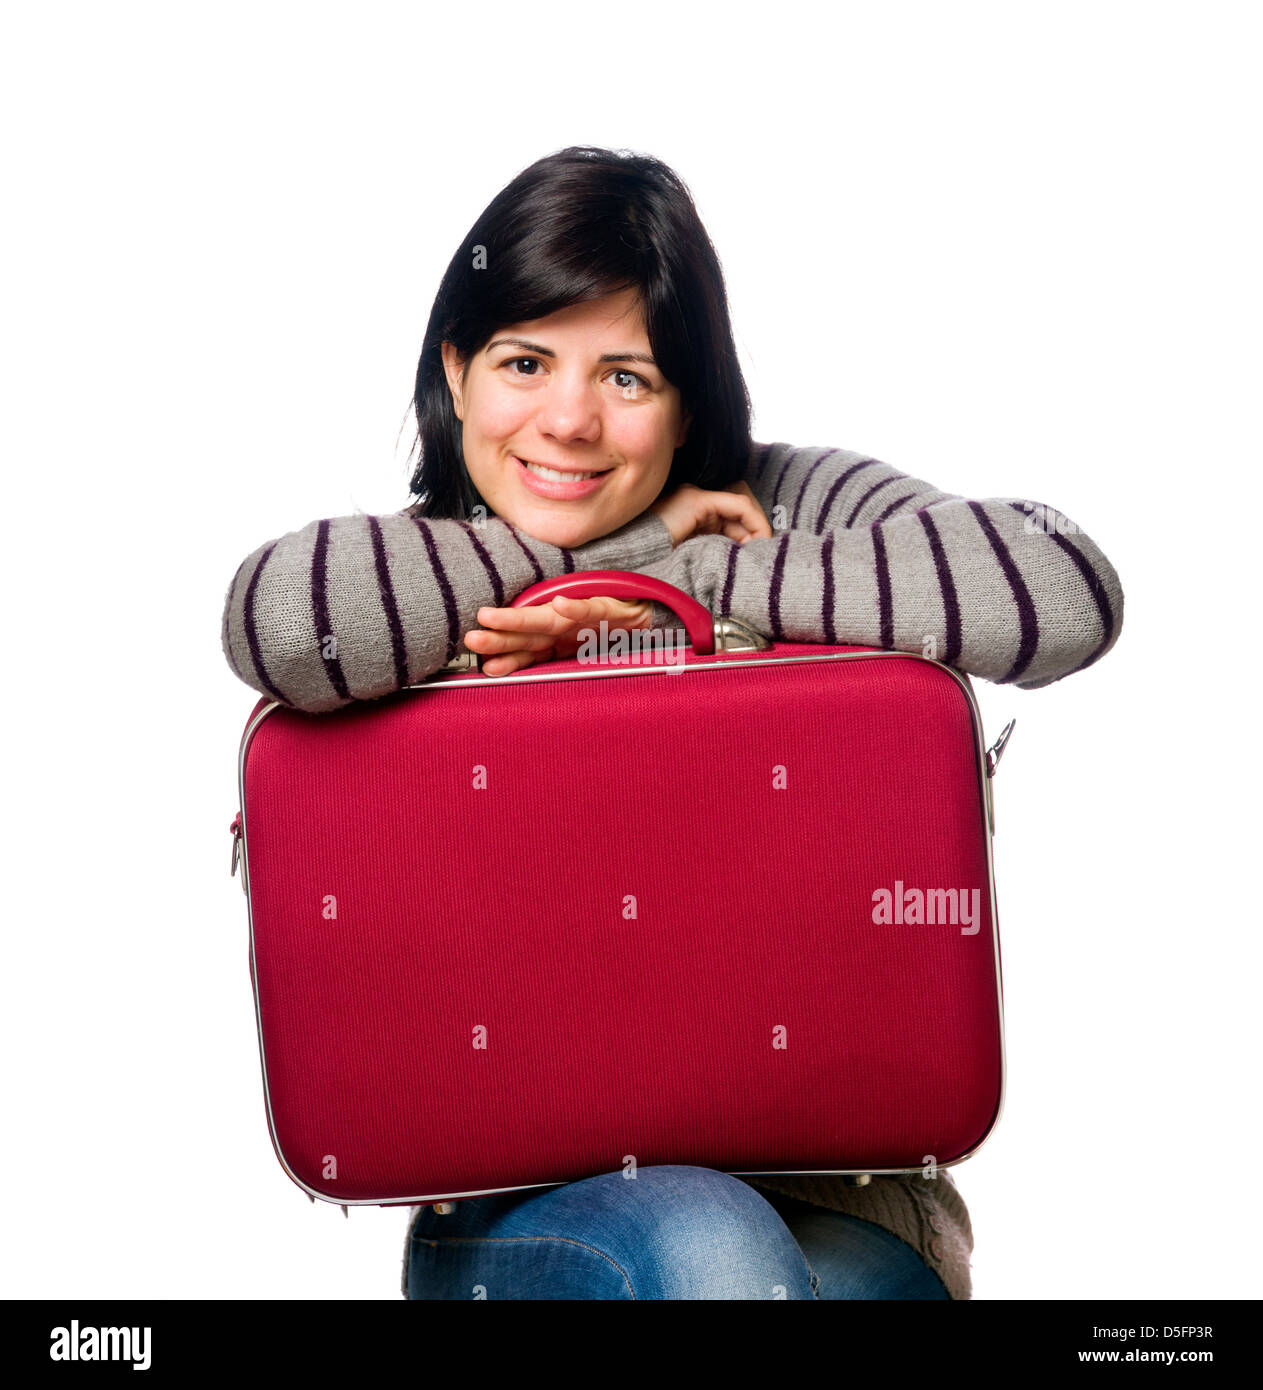 Porträt der hübsche junge Frau mit einem roten Koffer isoliert auf weißem Hintergrund Stockfoto